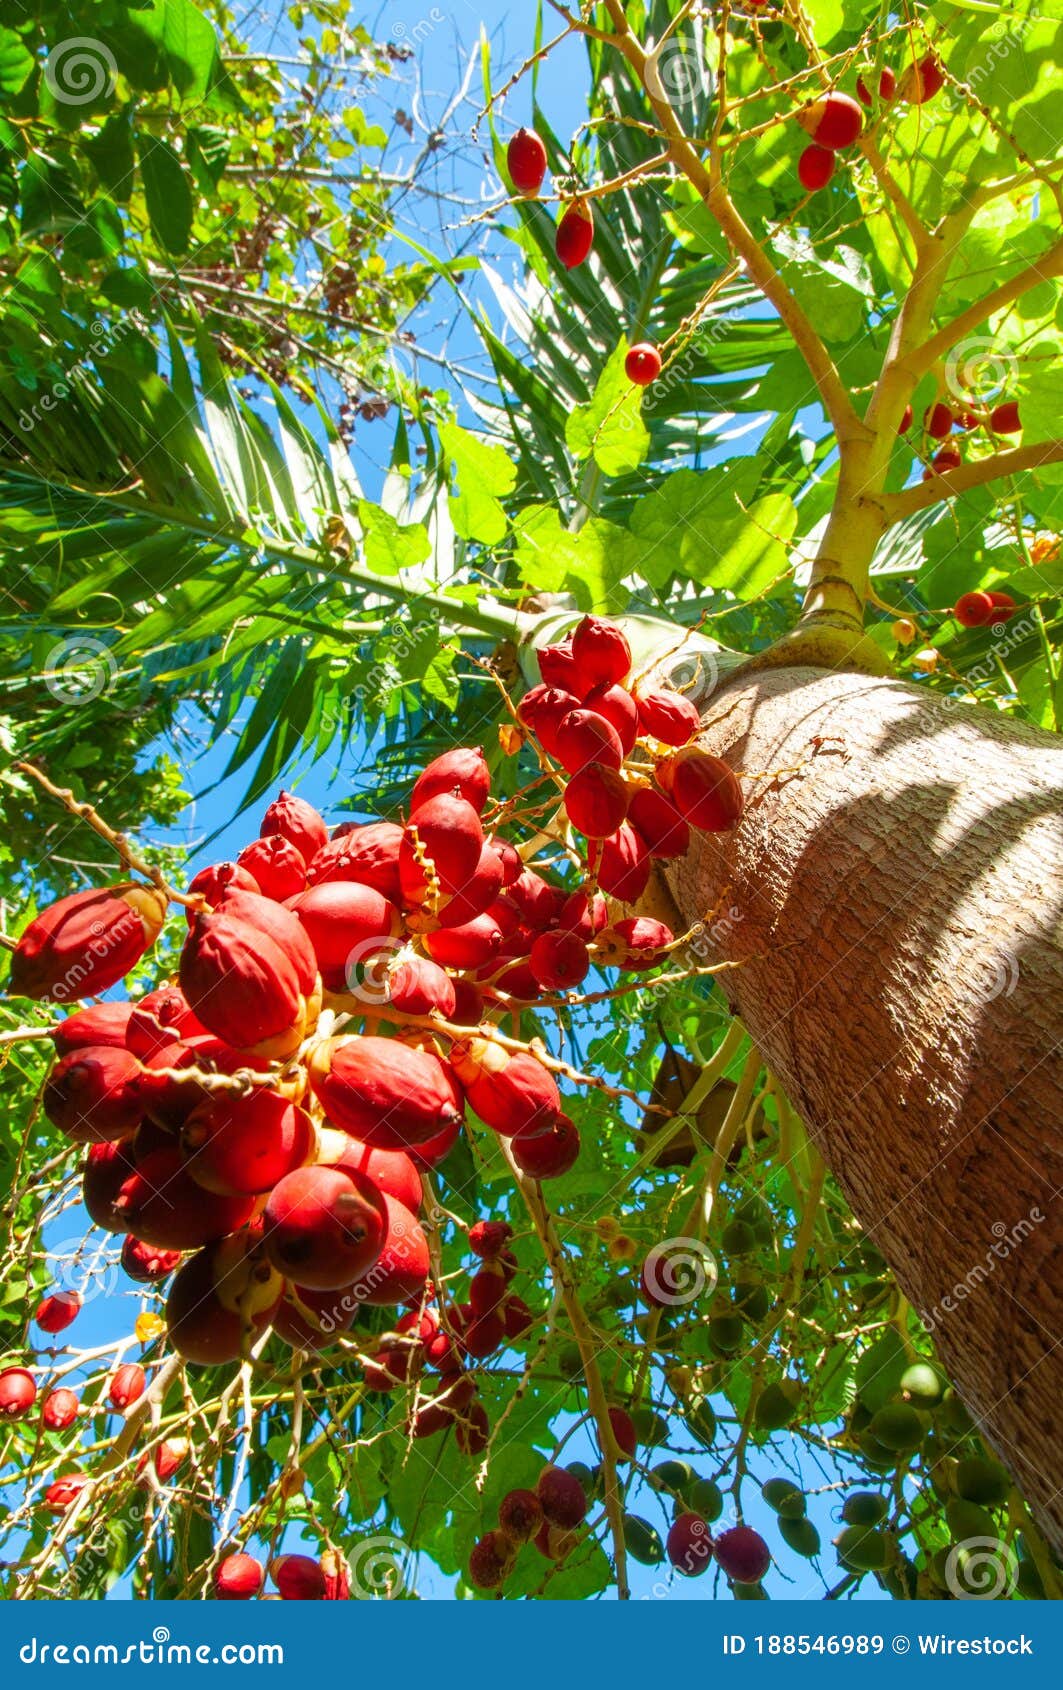 Fruits Of Date Palm Phoenix Dactylifera. Royalty-Free Stock Photo ...